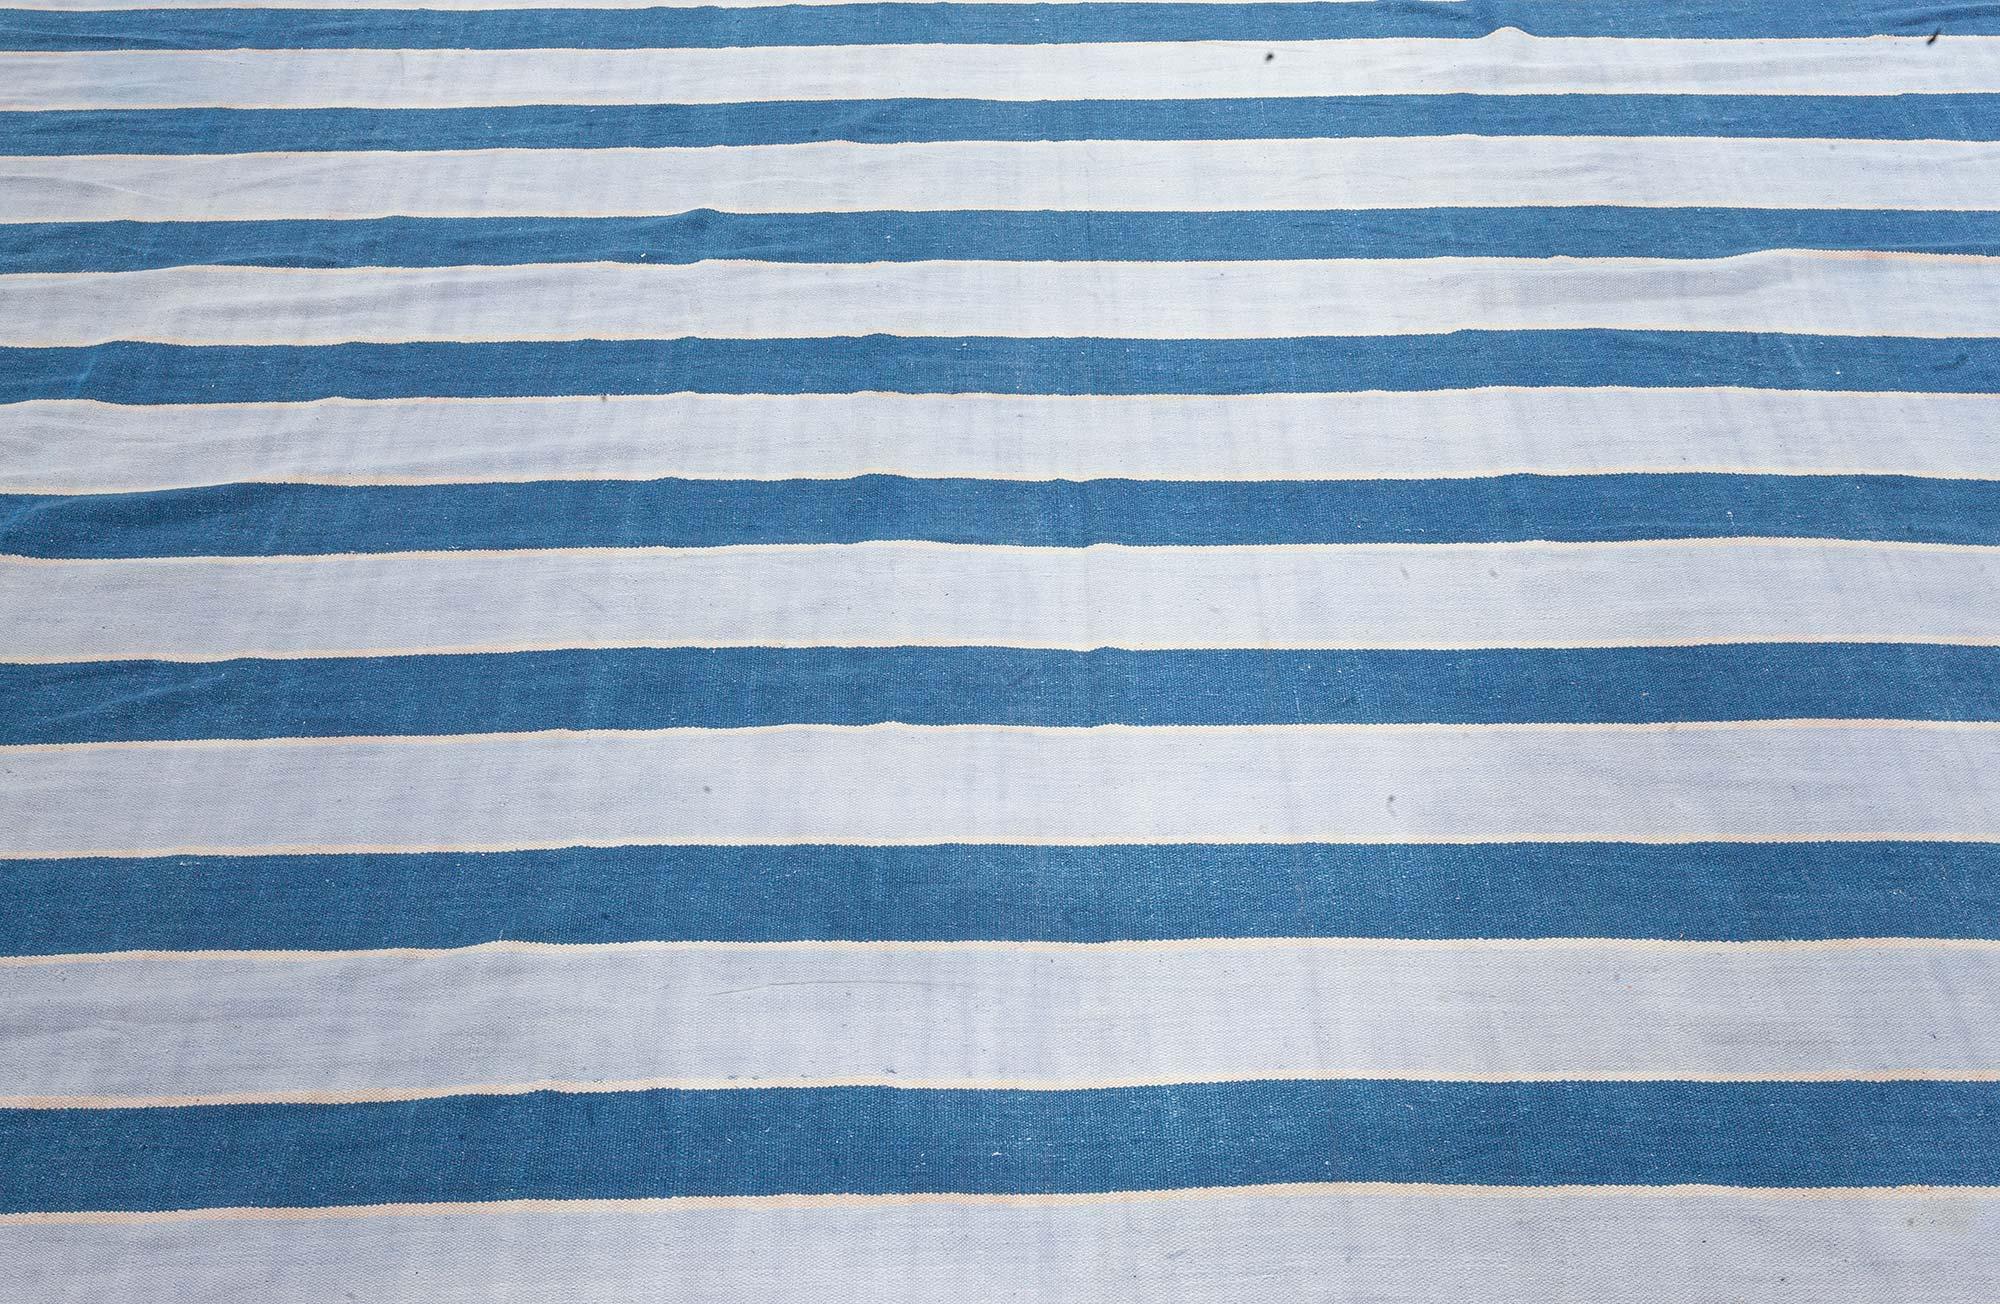 Vintage Indian Dhurrie striped blue beige rug
Size: 11'1